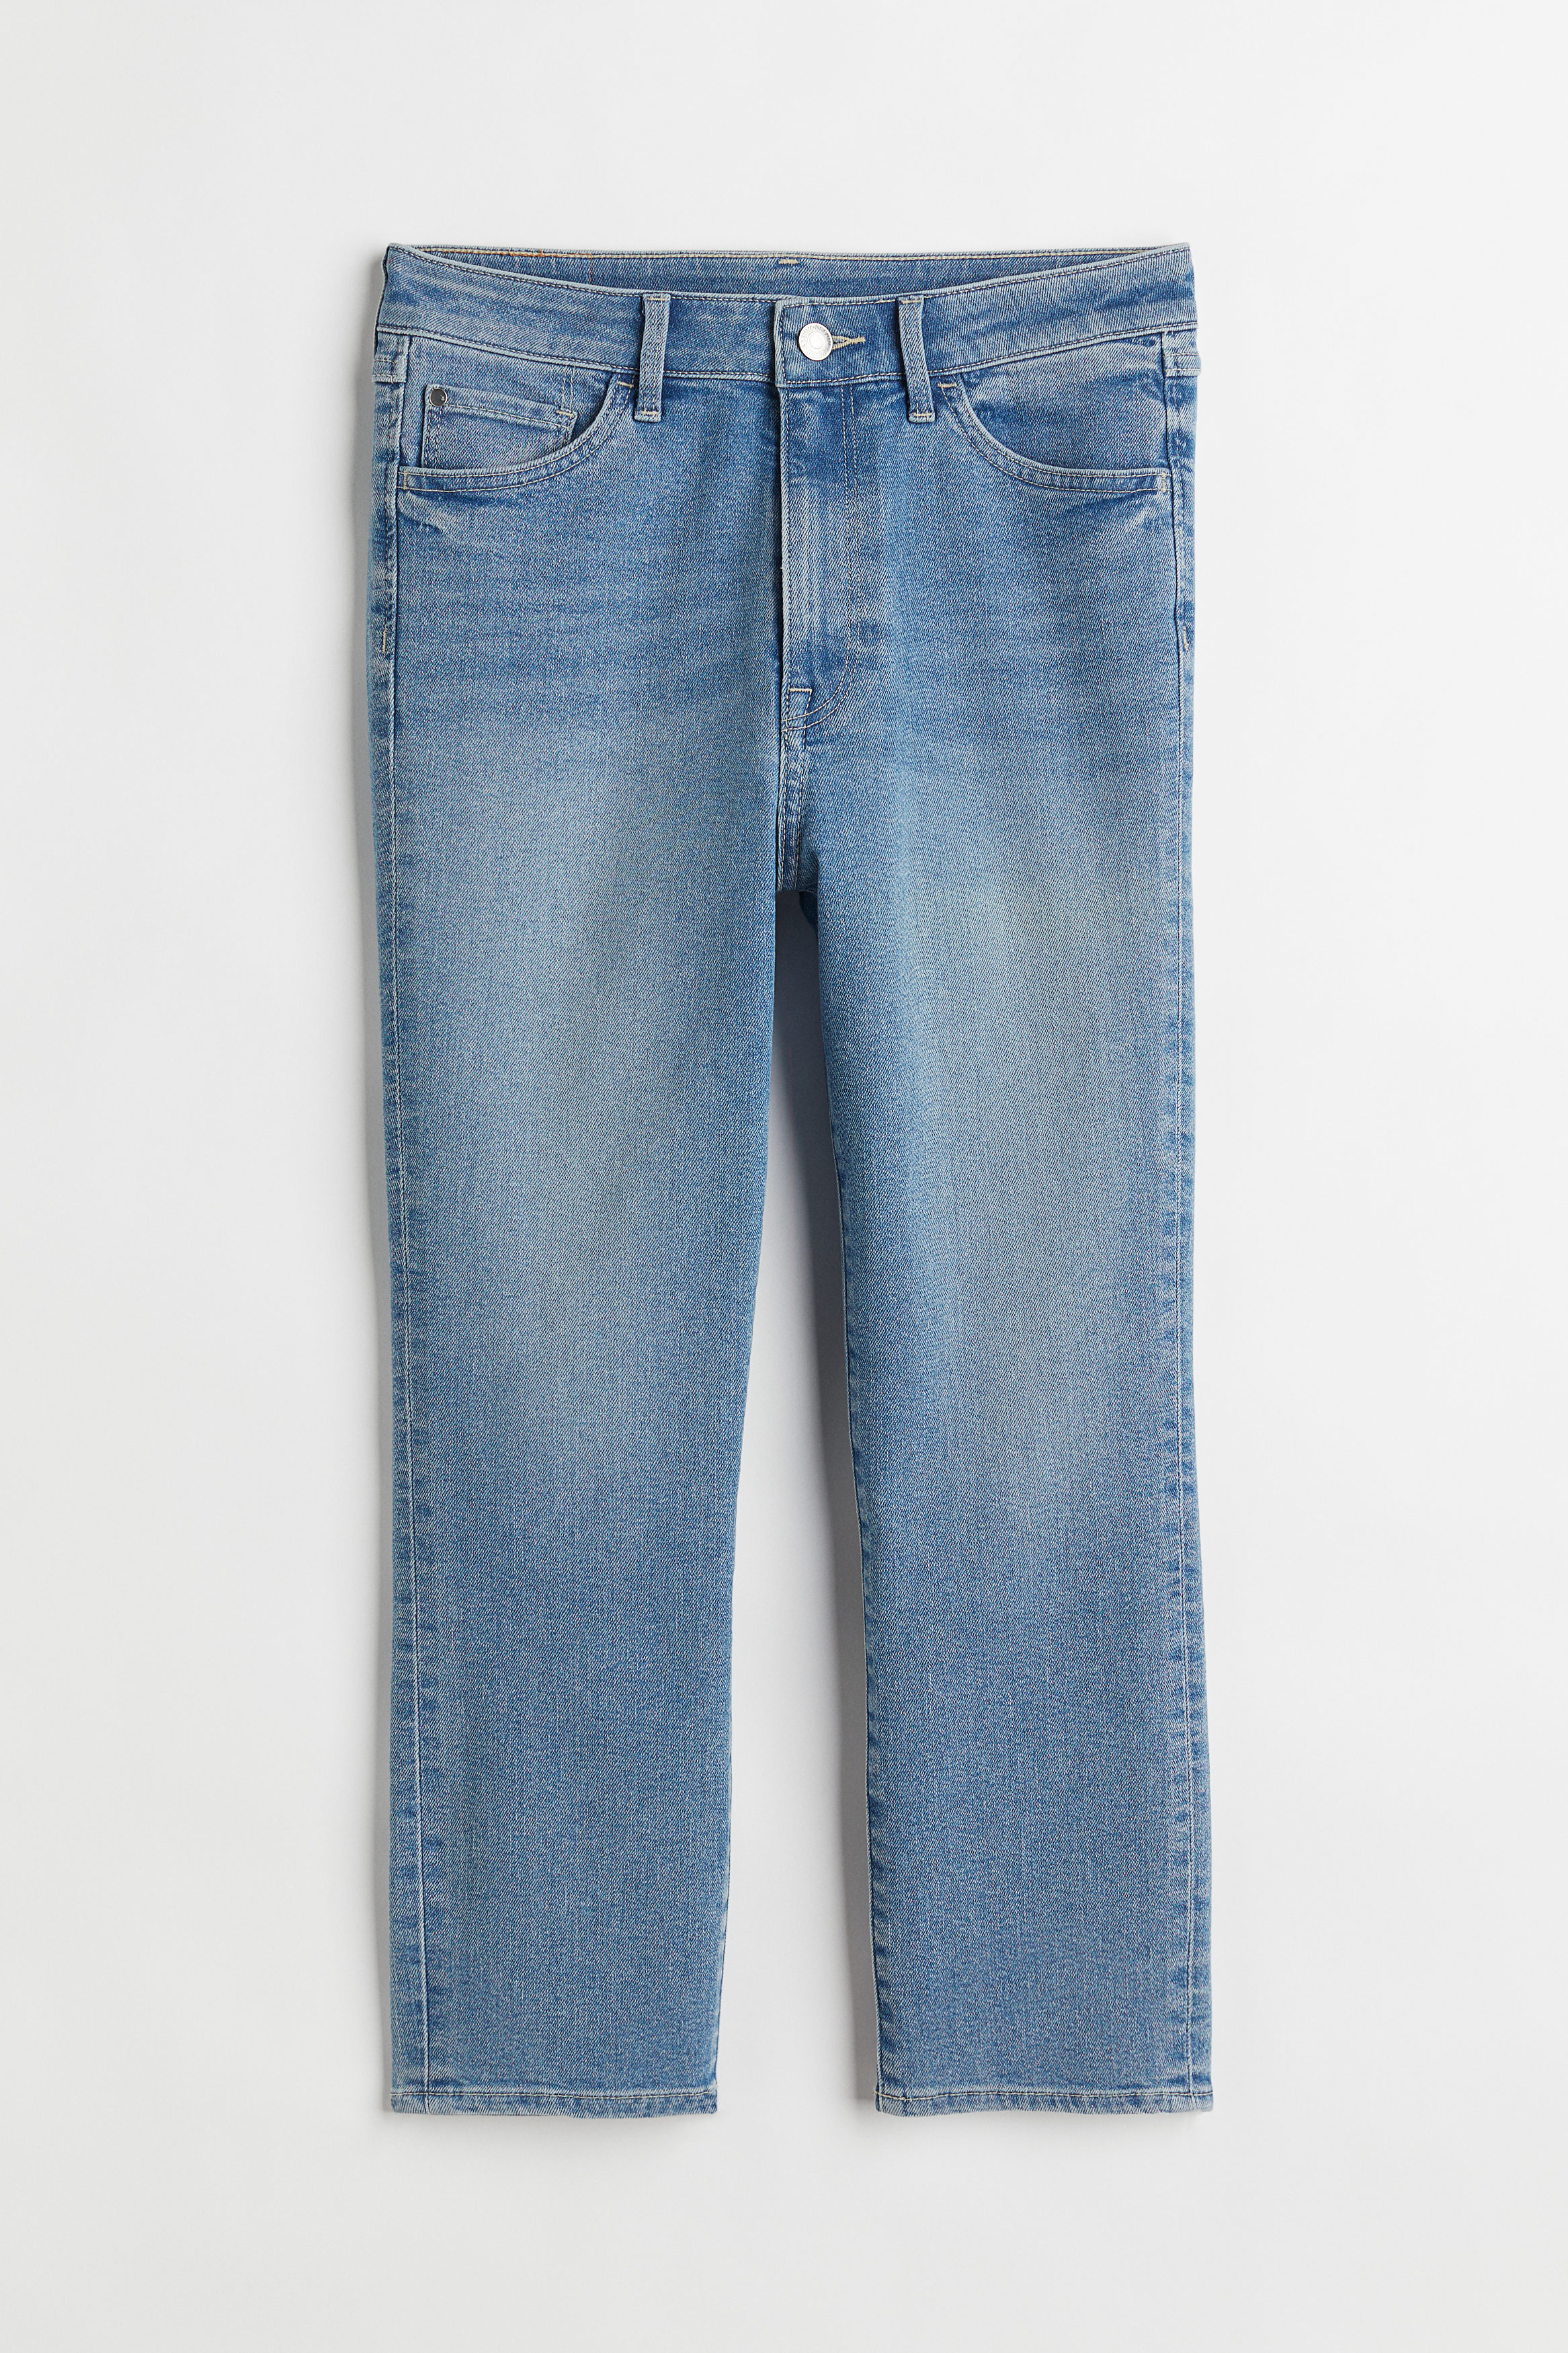 H&M Skinny High Cropped Jeans Denimblå, jeans. Farve: Denim blue 009 I størrelse 32